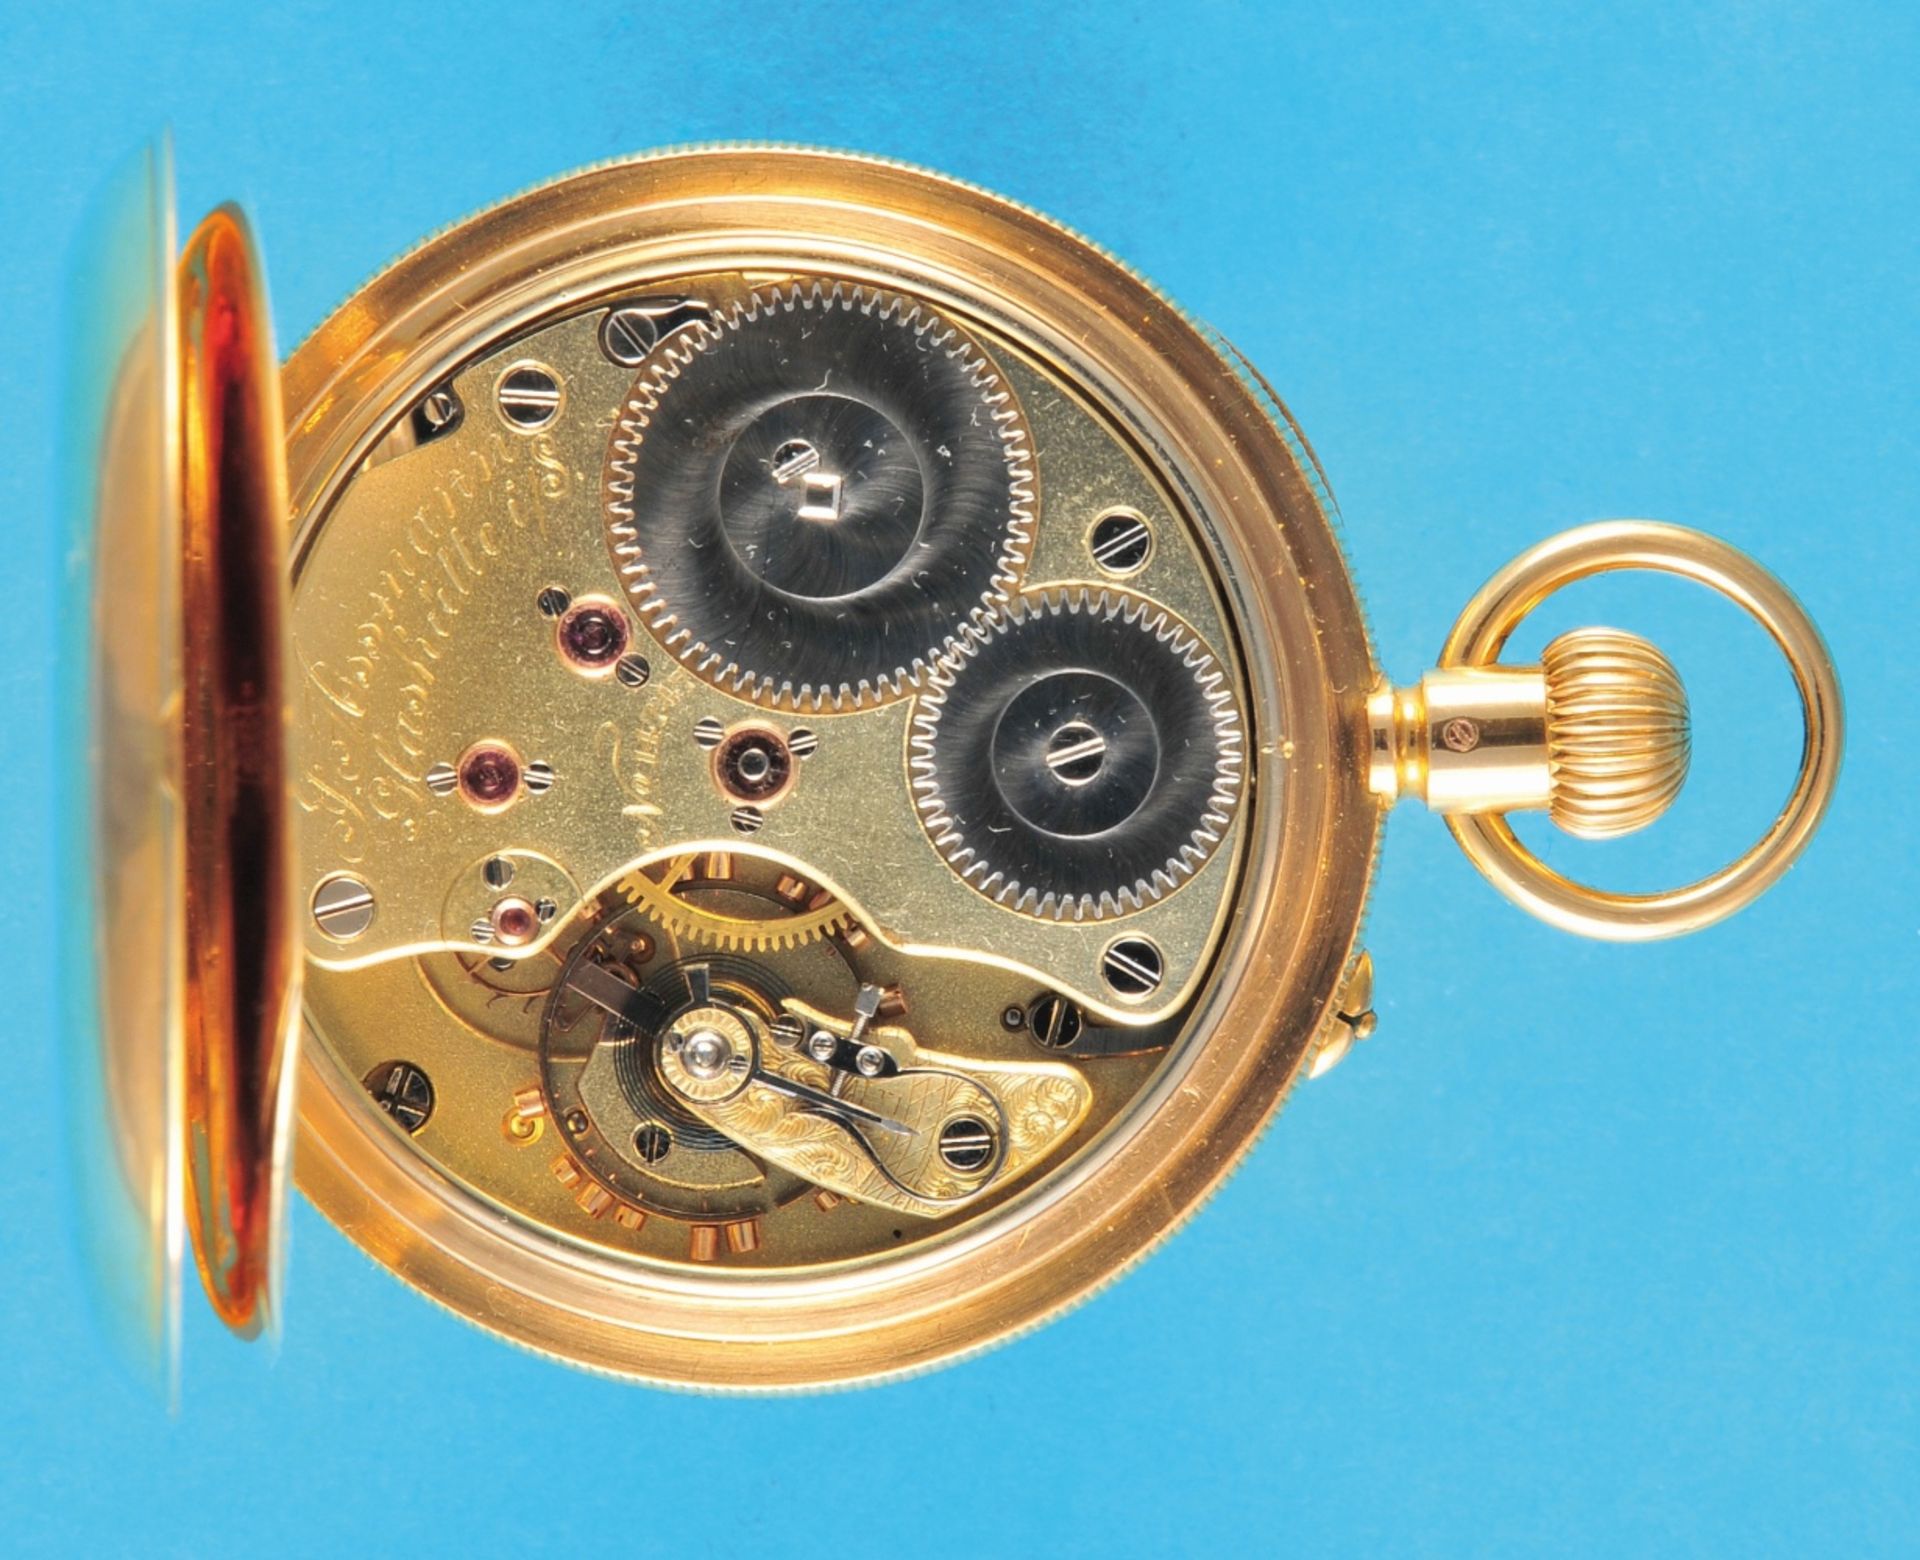 J. Assmann, Glashütte i./S., No. 14747 in 1Aquality, large 18-ct.-2-lid gold pocket watch,  - Bild 2 aus 2